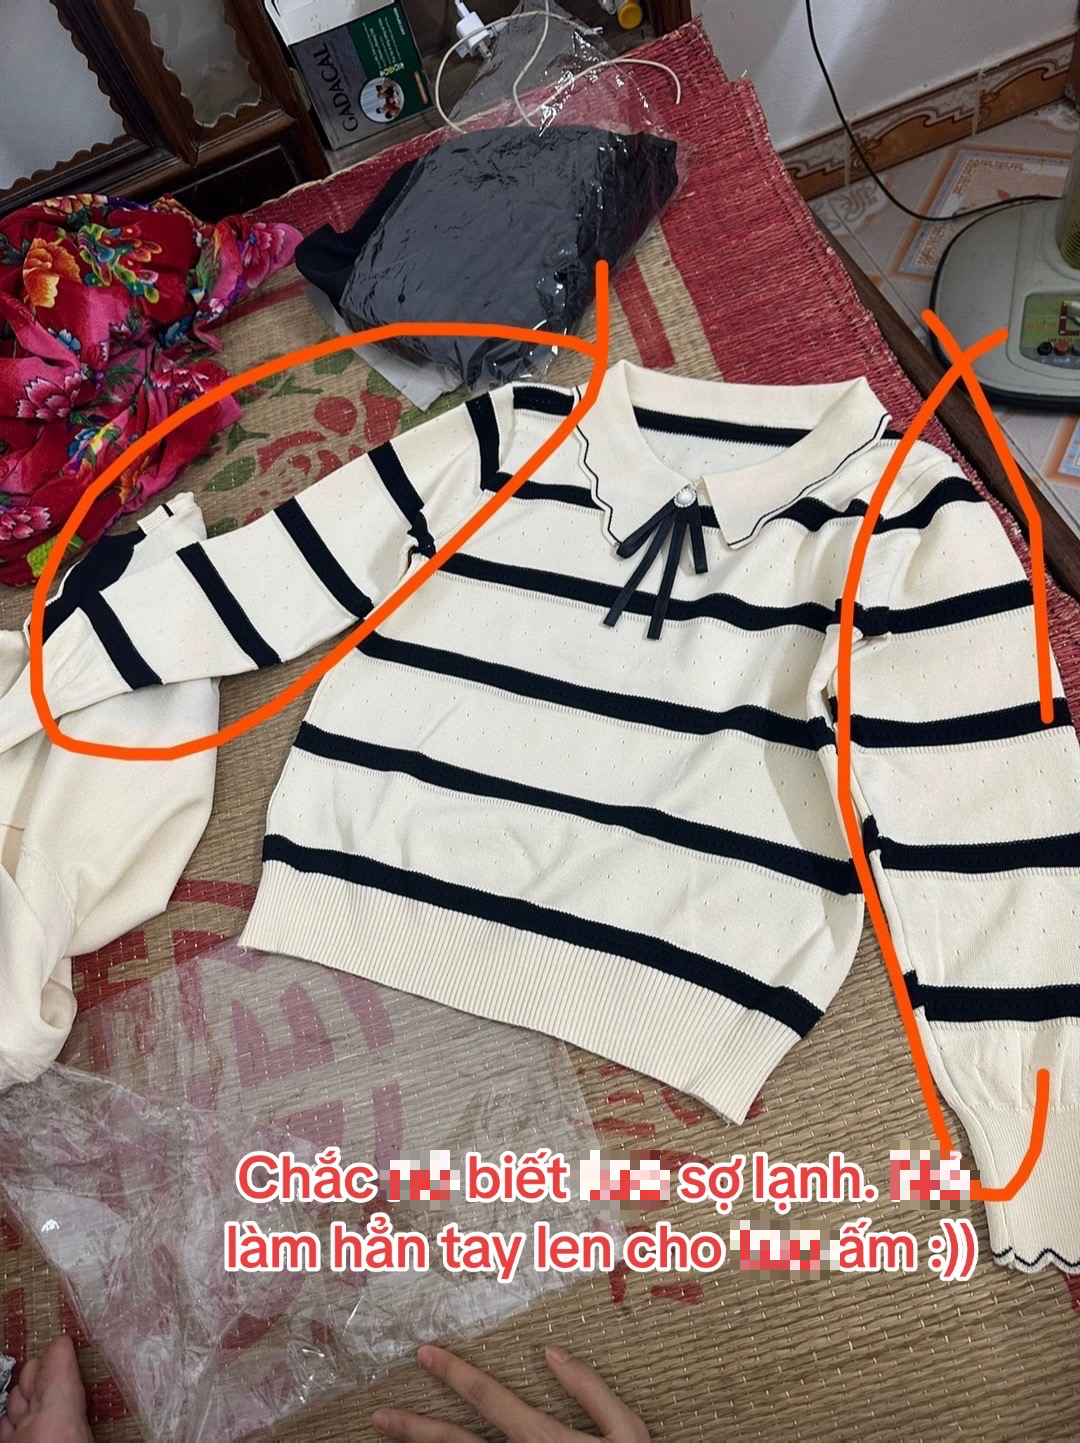 1001 chuyện cười ra nước mắt khi order quần áo trên Taobao: Hàng về tay 